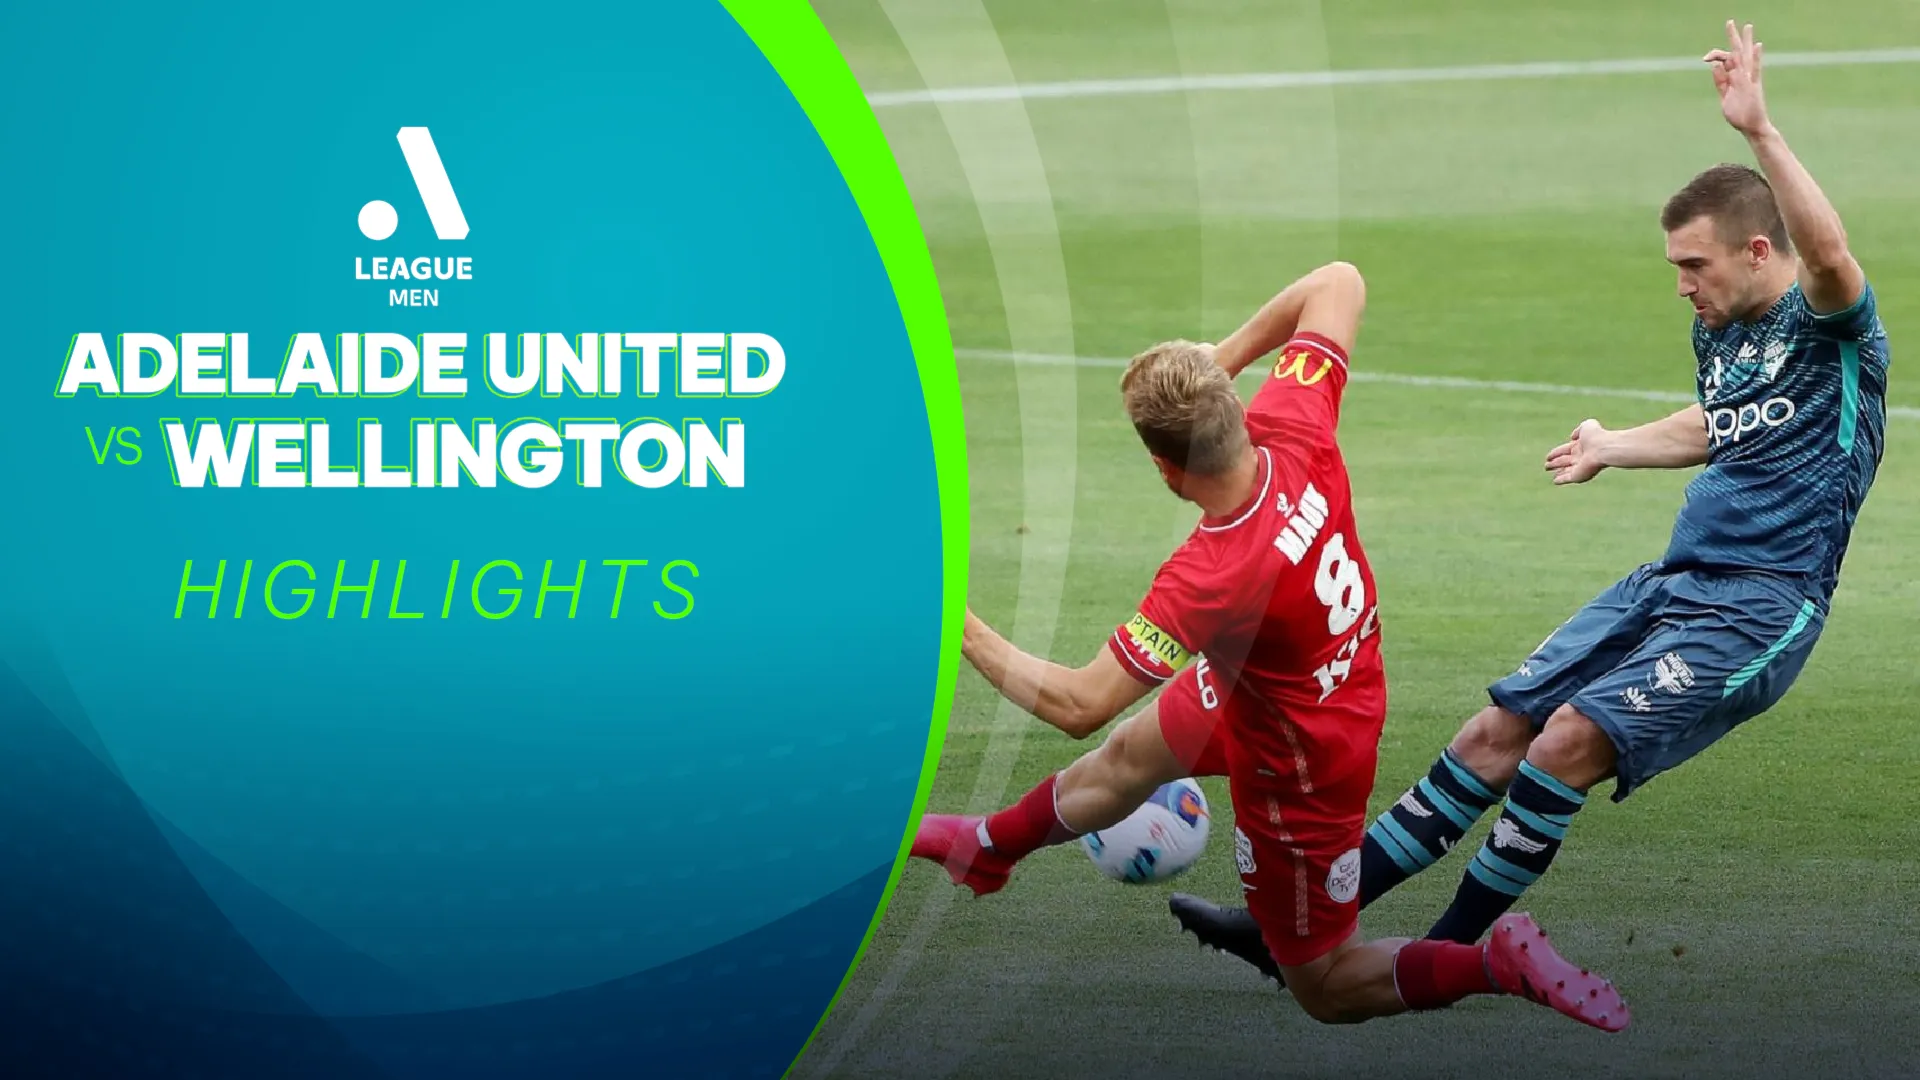 Highlights Adelaide United - Wellington (Vòng 7 - Giải VĐQG Úc 2021/22)